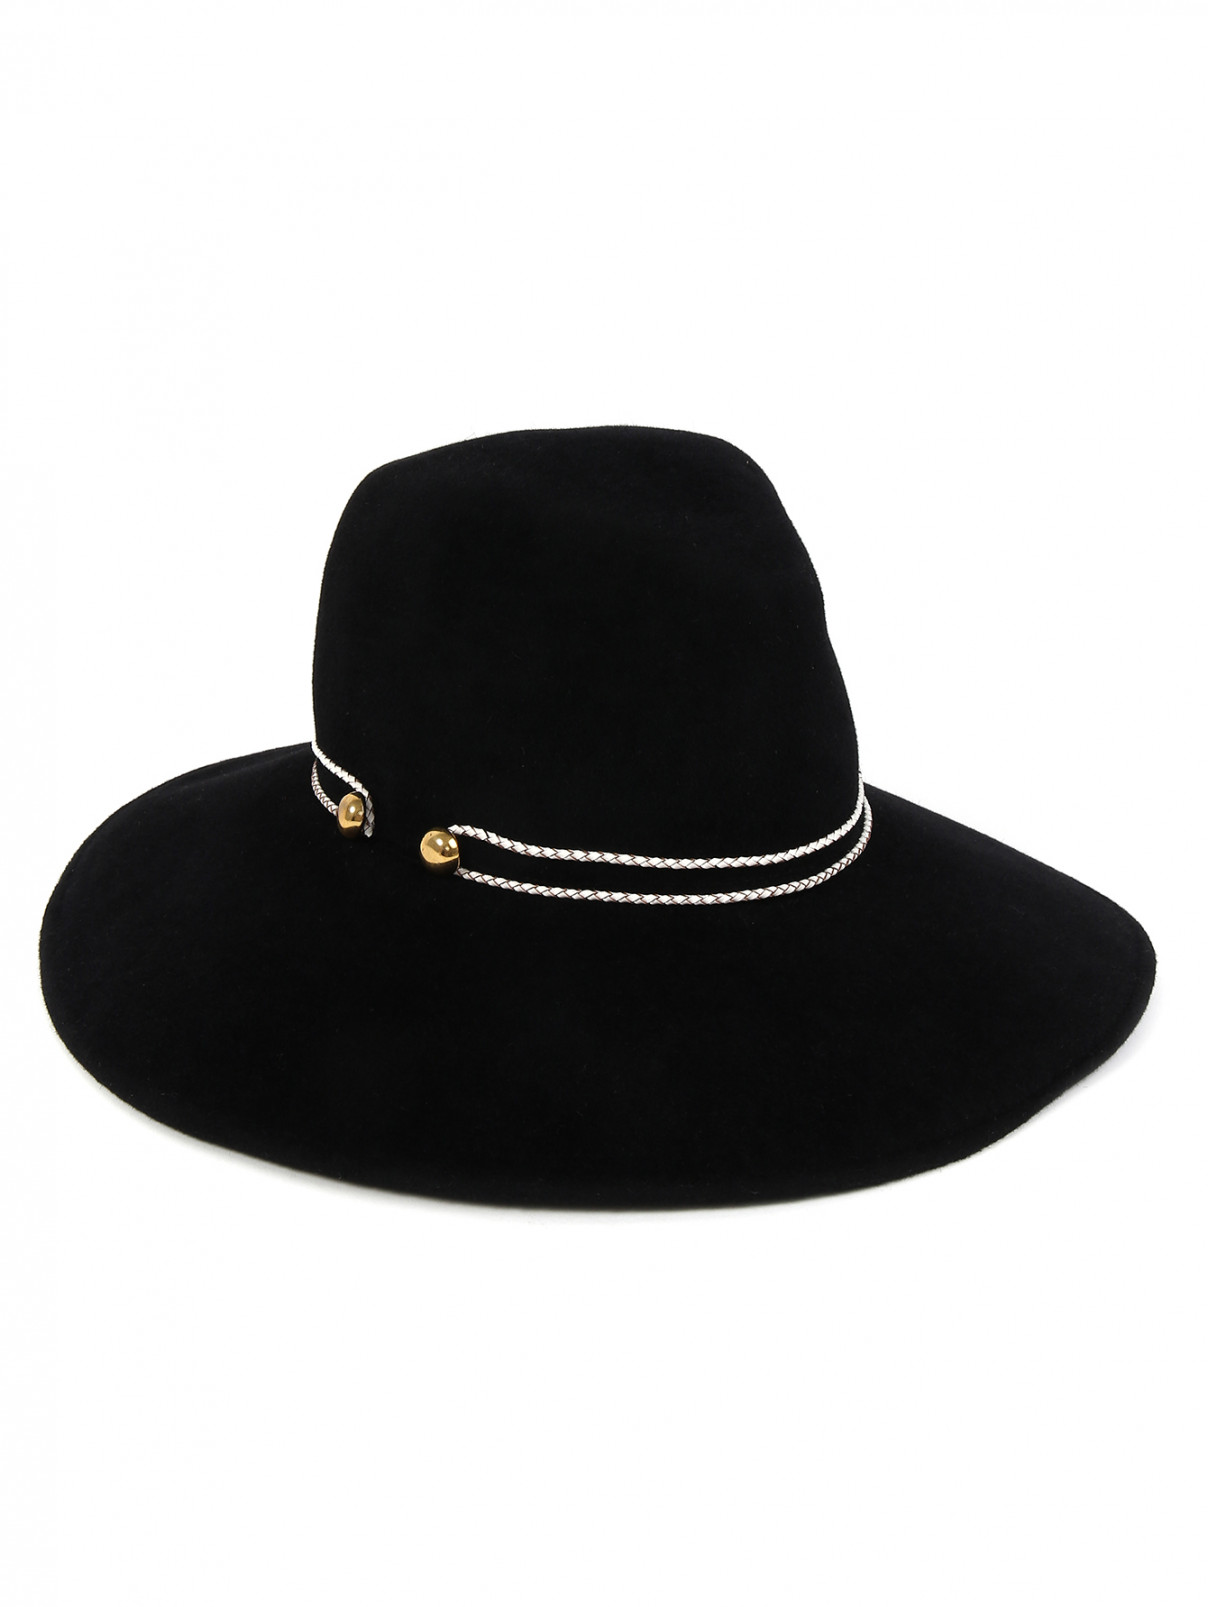 Шляпа из шерсти с декоративной отделкой Eugenia Kim  –  Общий вид  – Цвет:  Черный